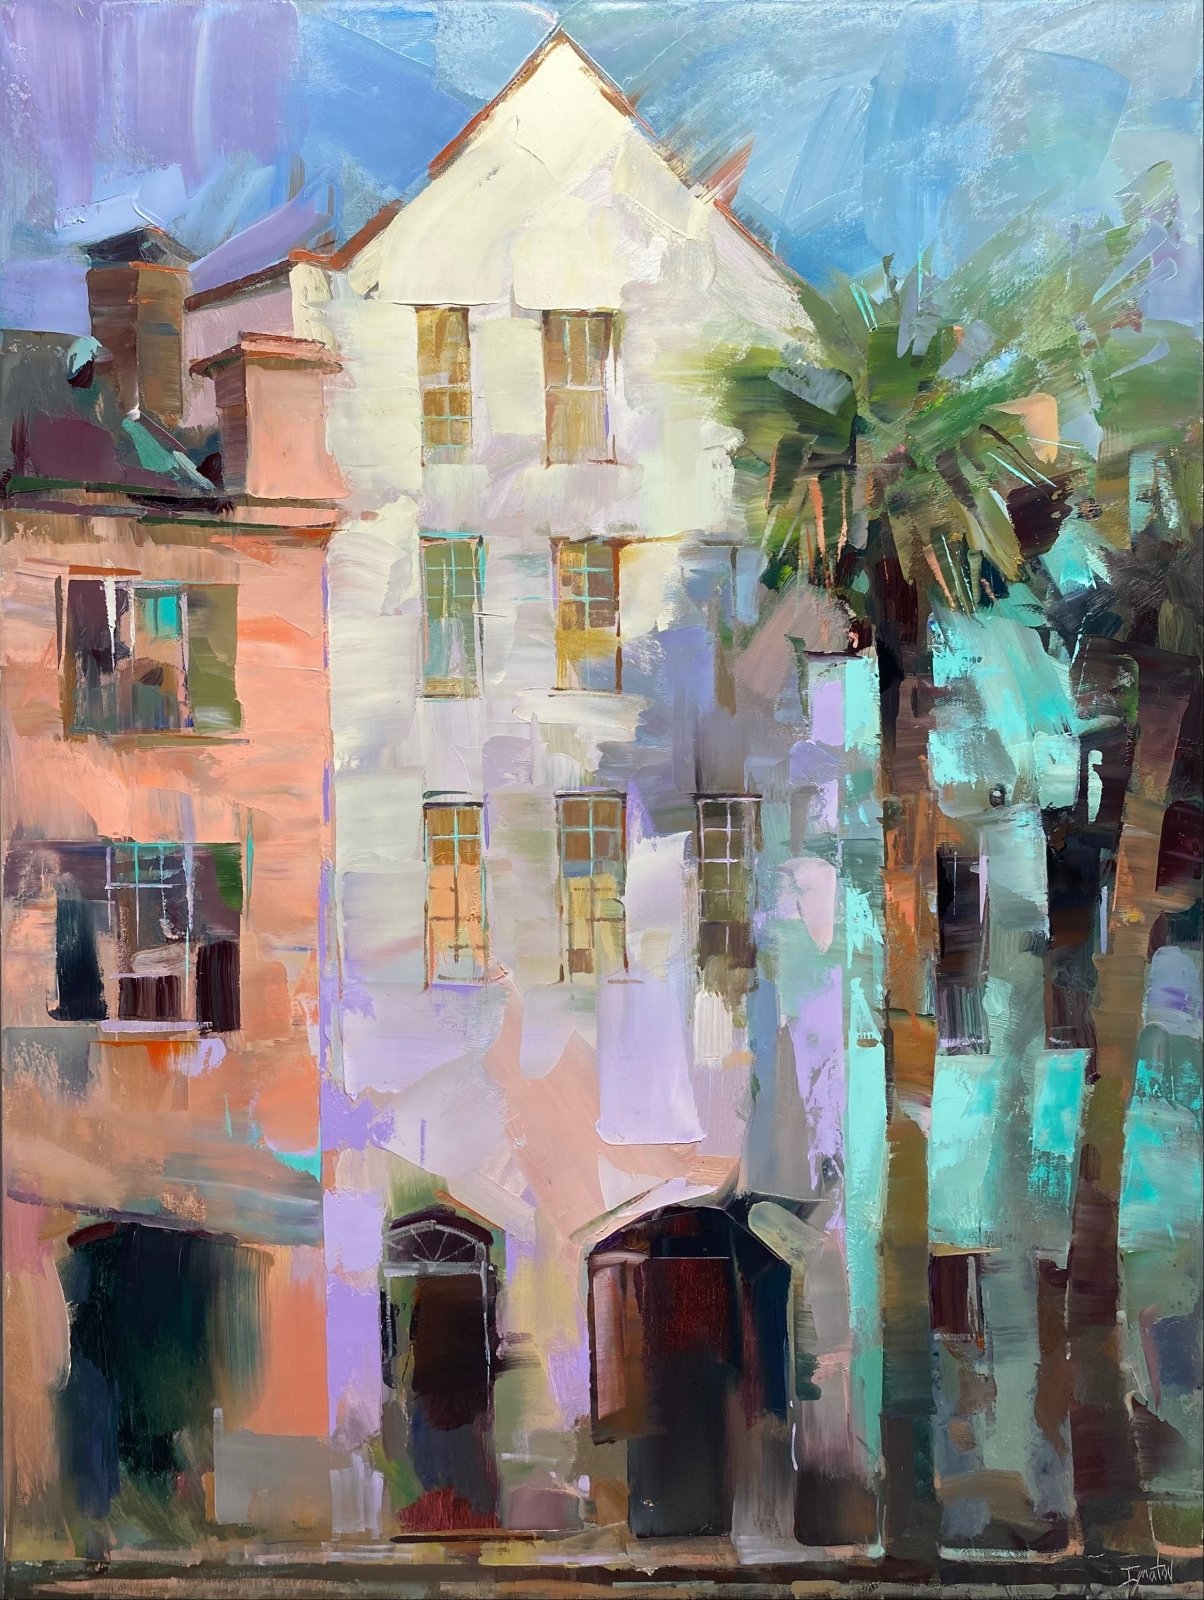 Charleston Colors by Ignat Ignatov at LePrince Galleries